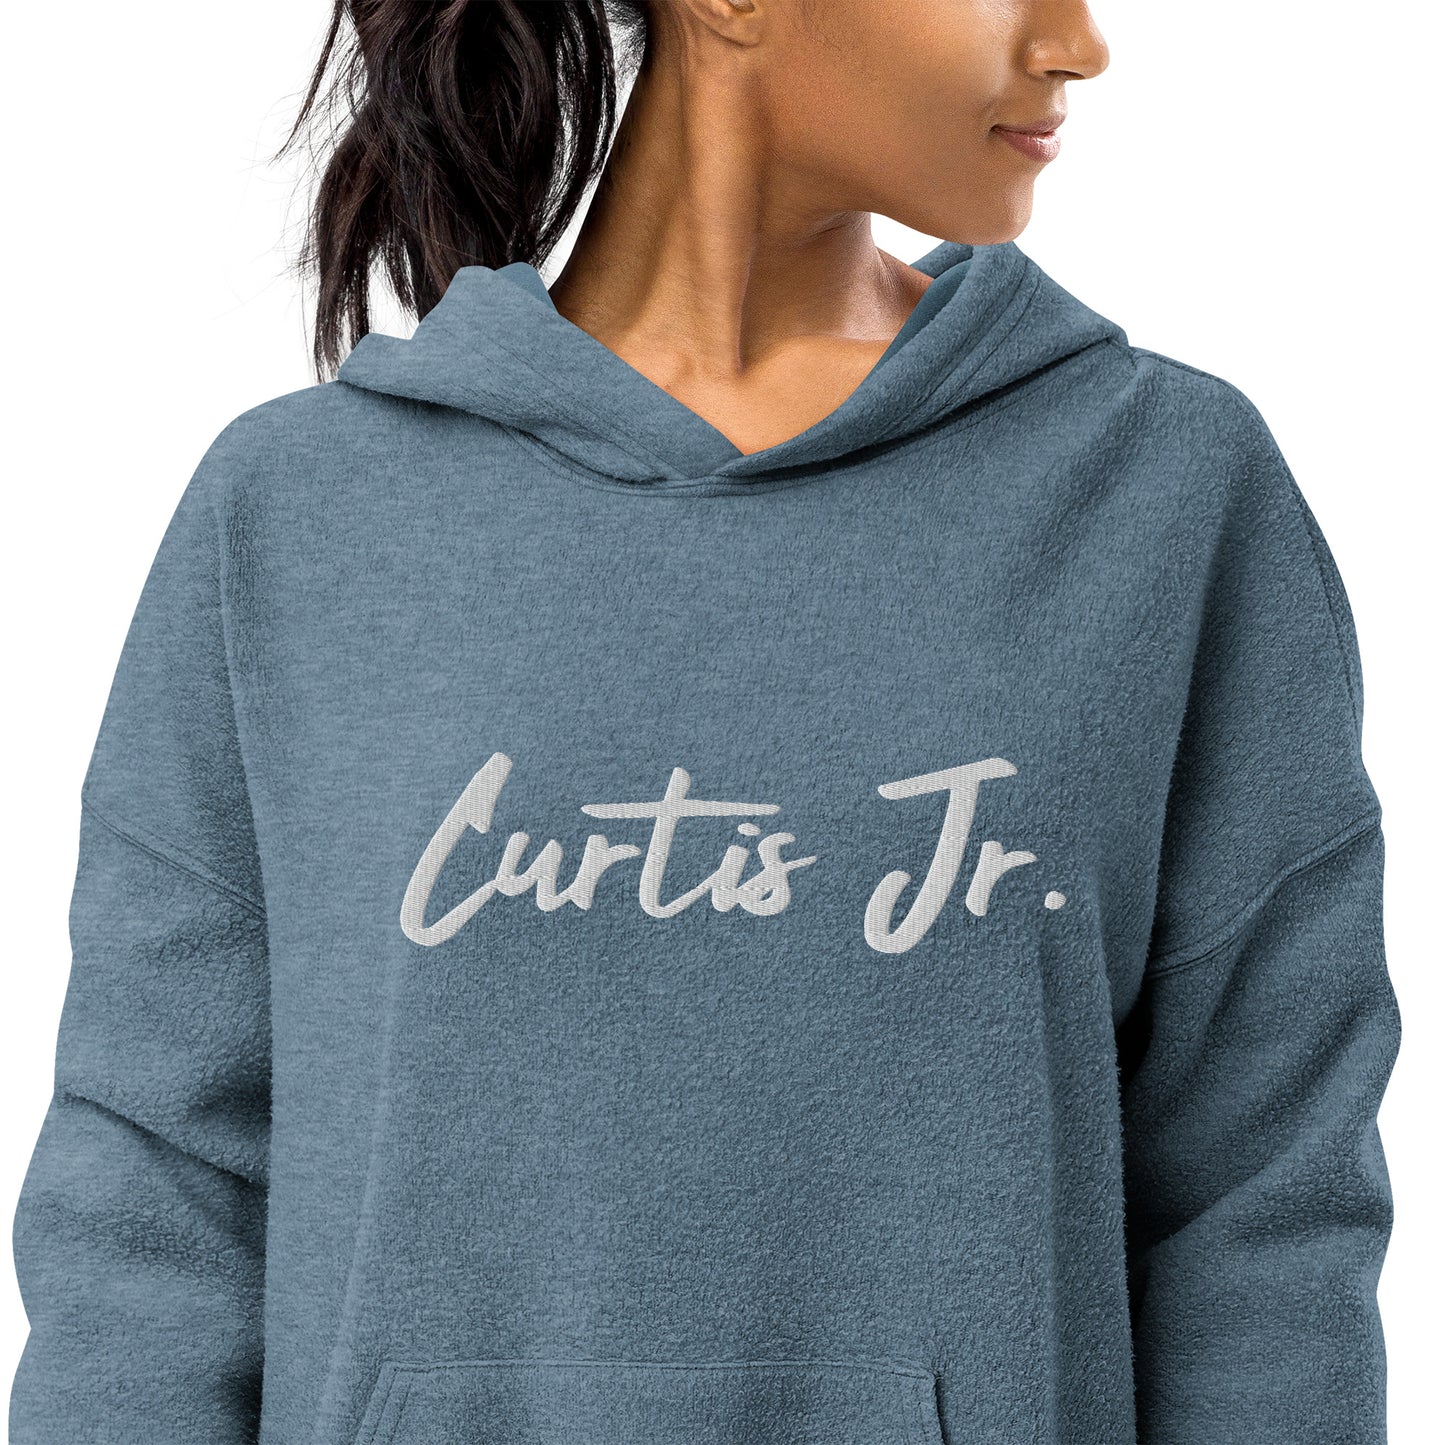 Curtis Jr. Unisex sueded fleece hoodie